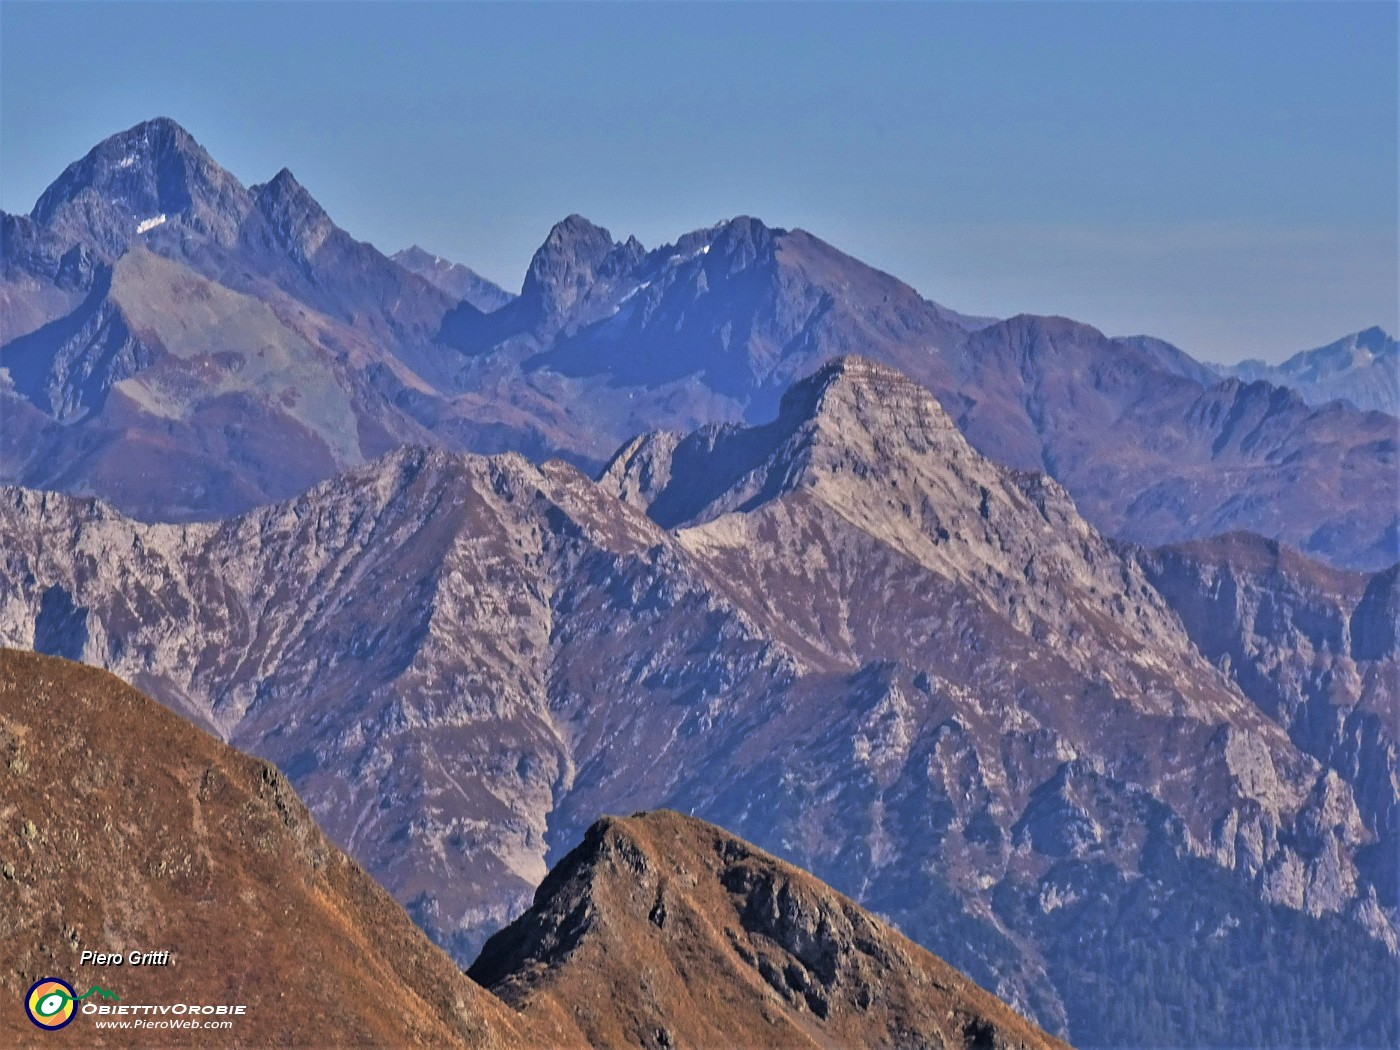 42 Maxi zoom in Pegherolo (2369 m) in primo piano e Pizzo del Diavolo (2916 m) in secondo piano a sx.JPG